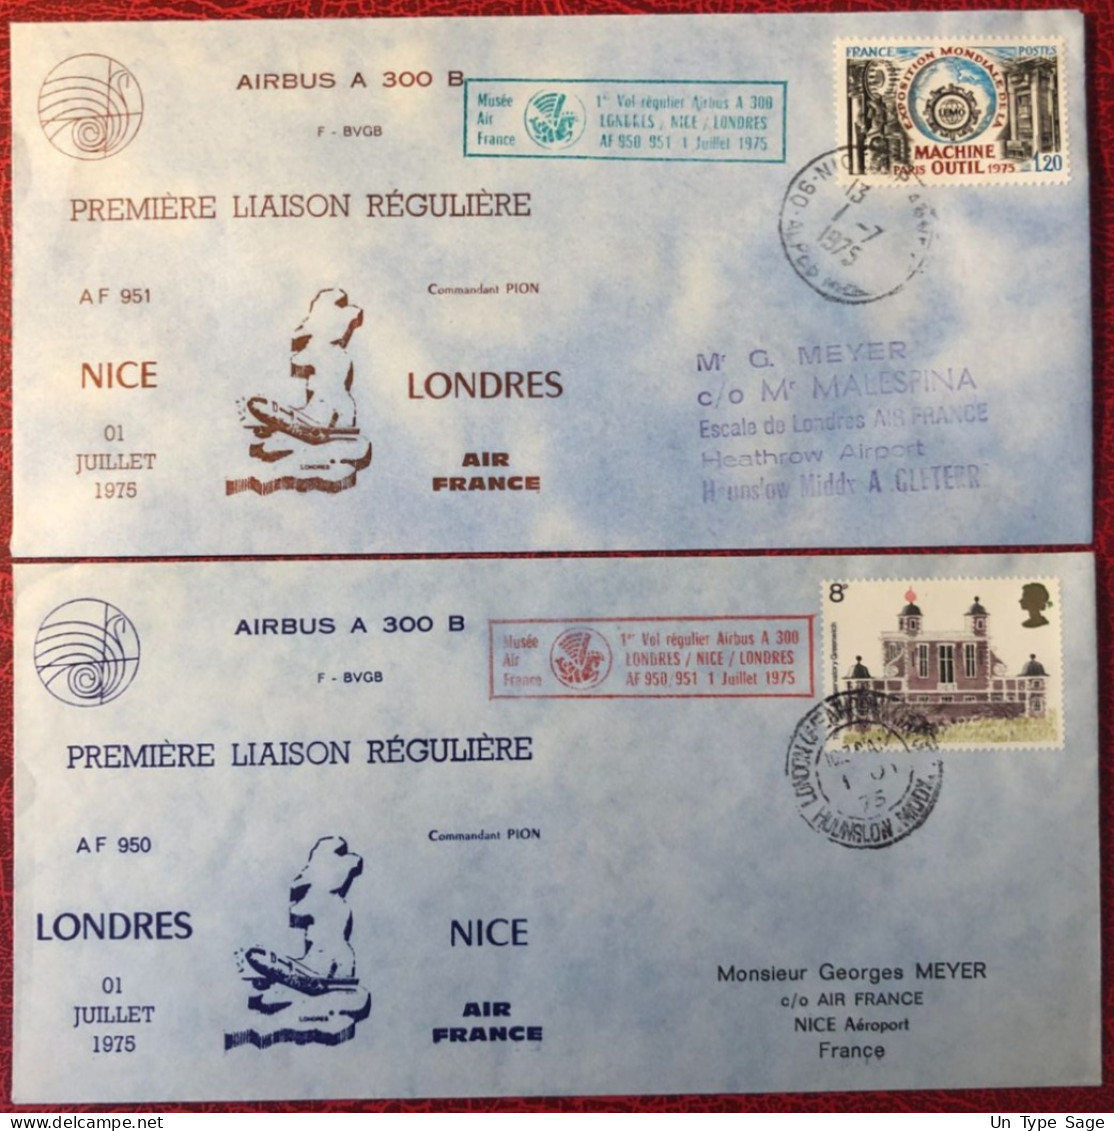 France, Premier Vol (Airbus A300) NICE / LONDRES 1.7.1975 - 2 Enveloppes - (A1498) - Primeros Vuelos